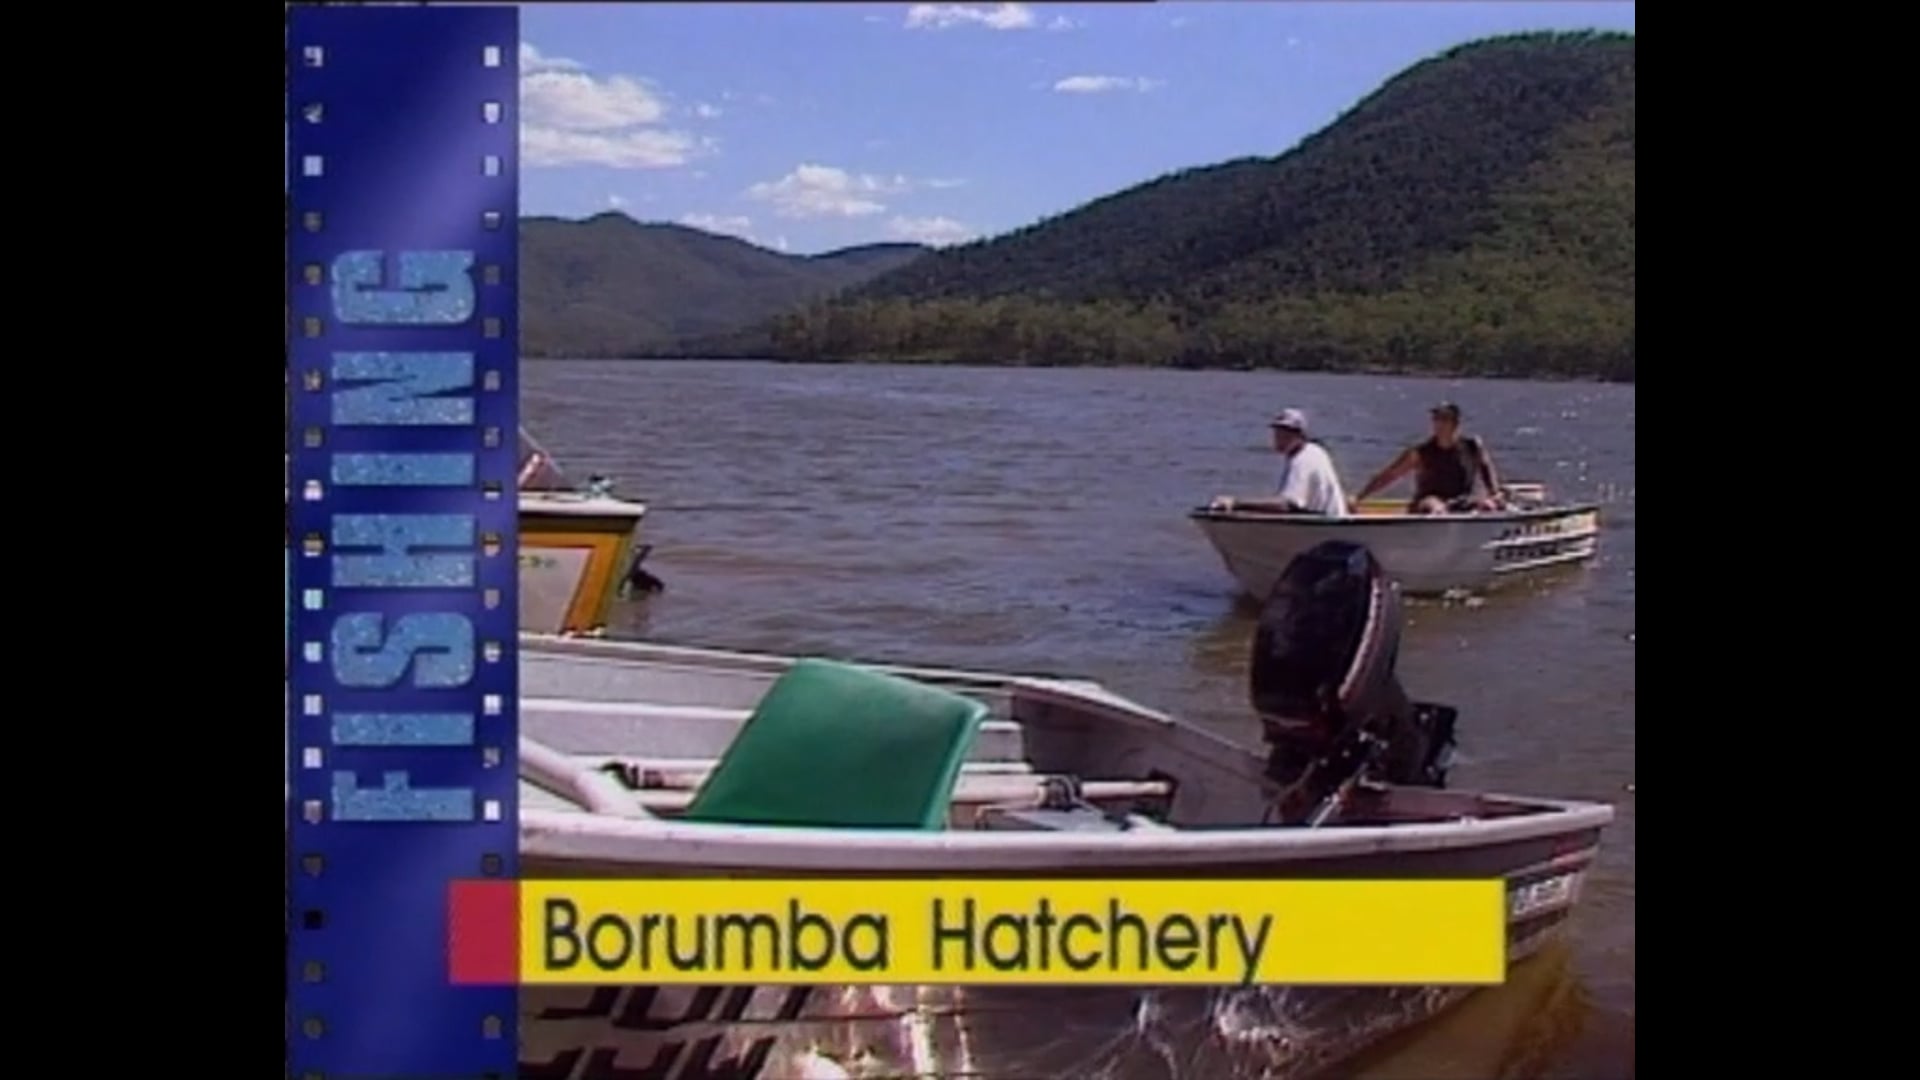 Lake Borumba Fish Hatchery